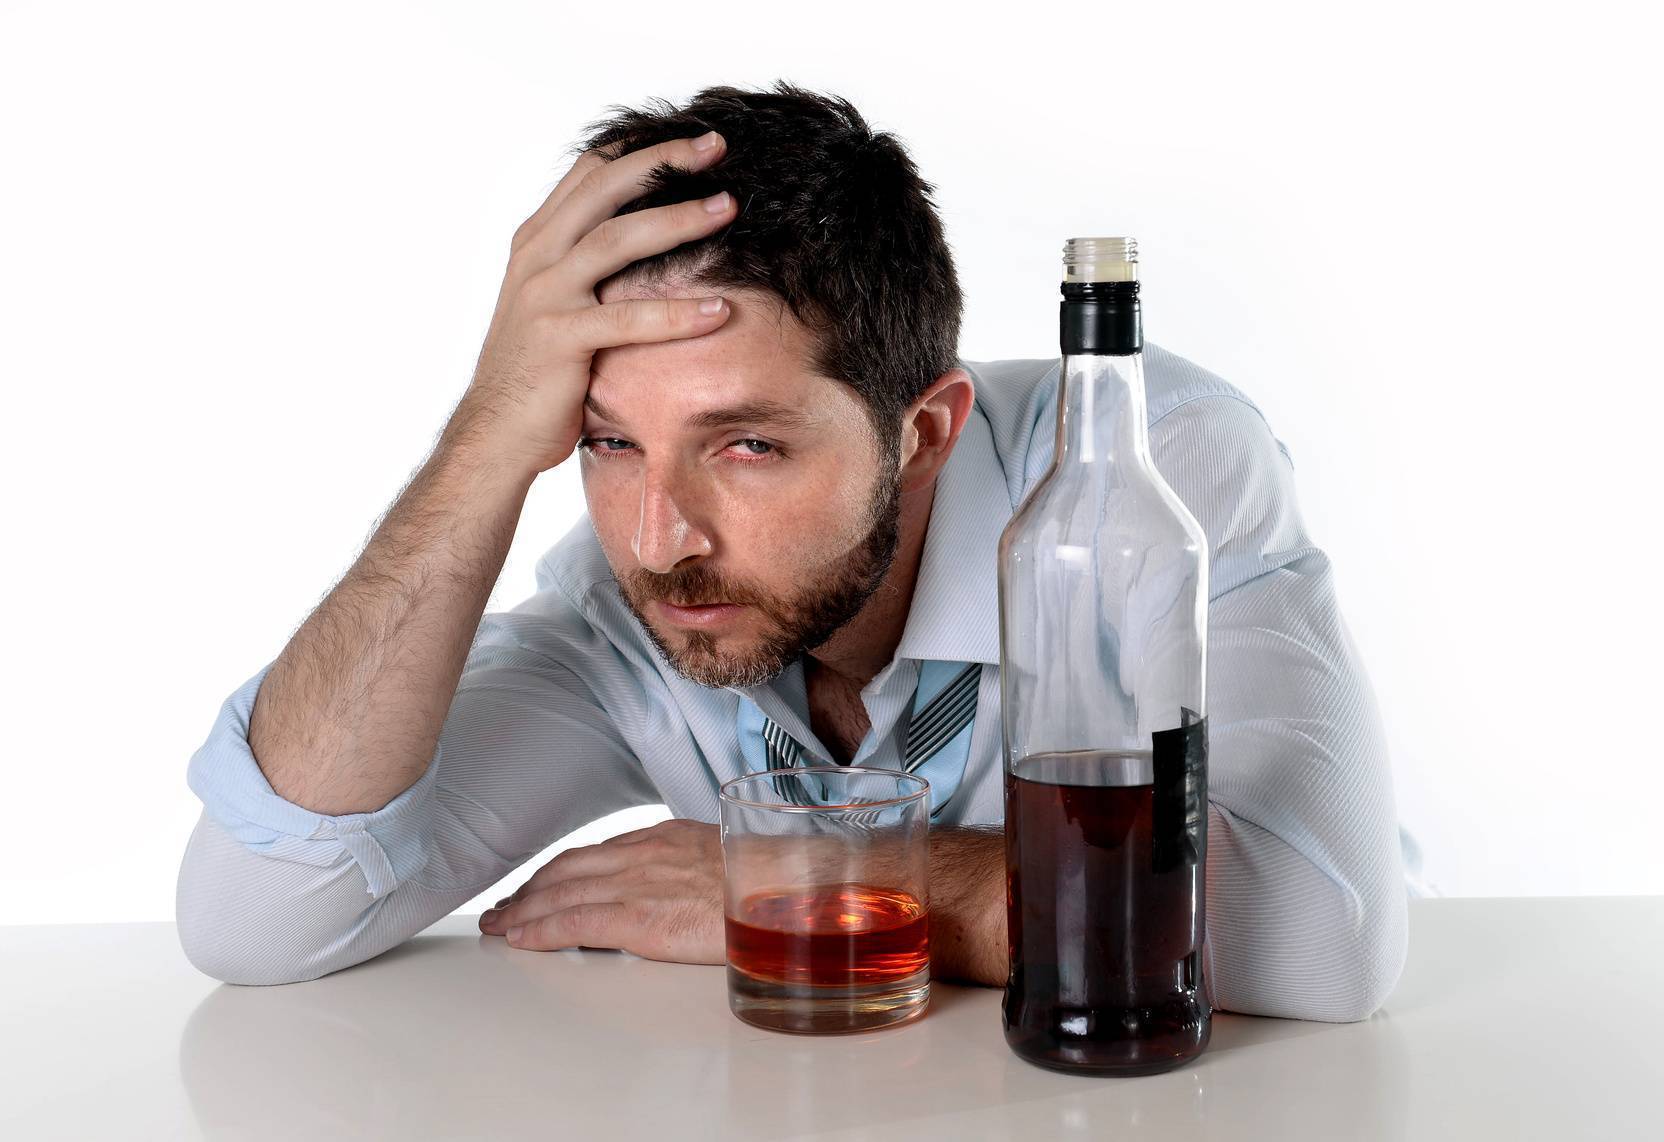 Причины алкоголизма - физиологические, социальные, психологические причины развития зависимости